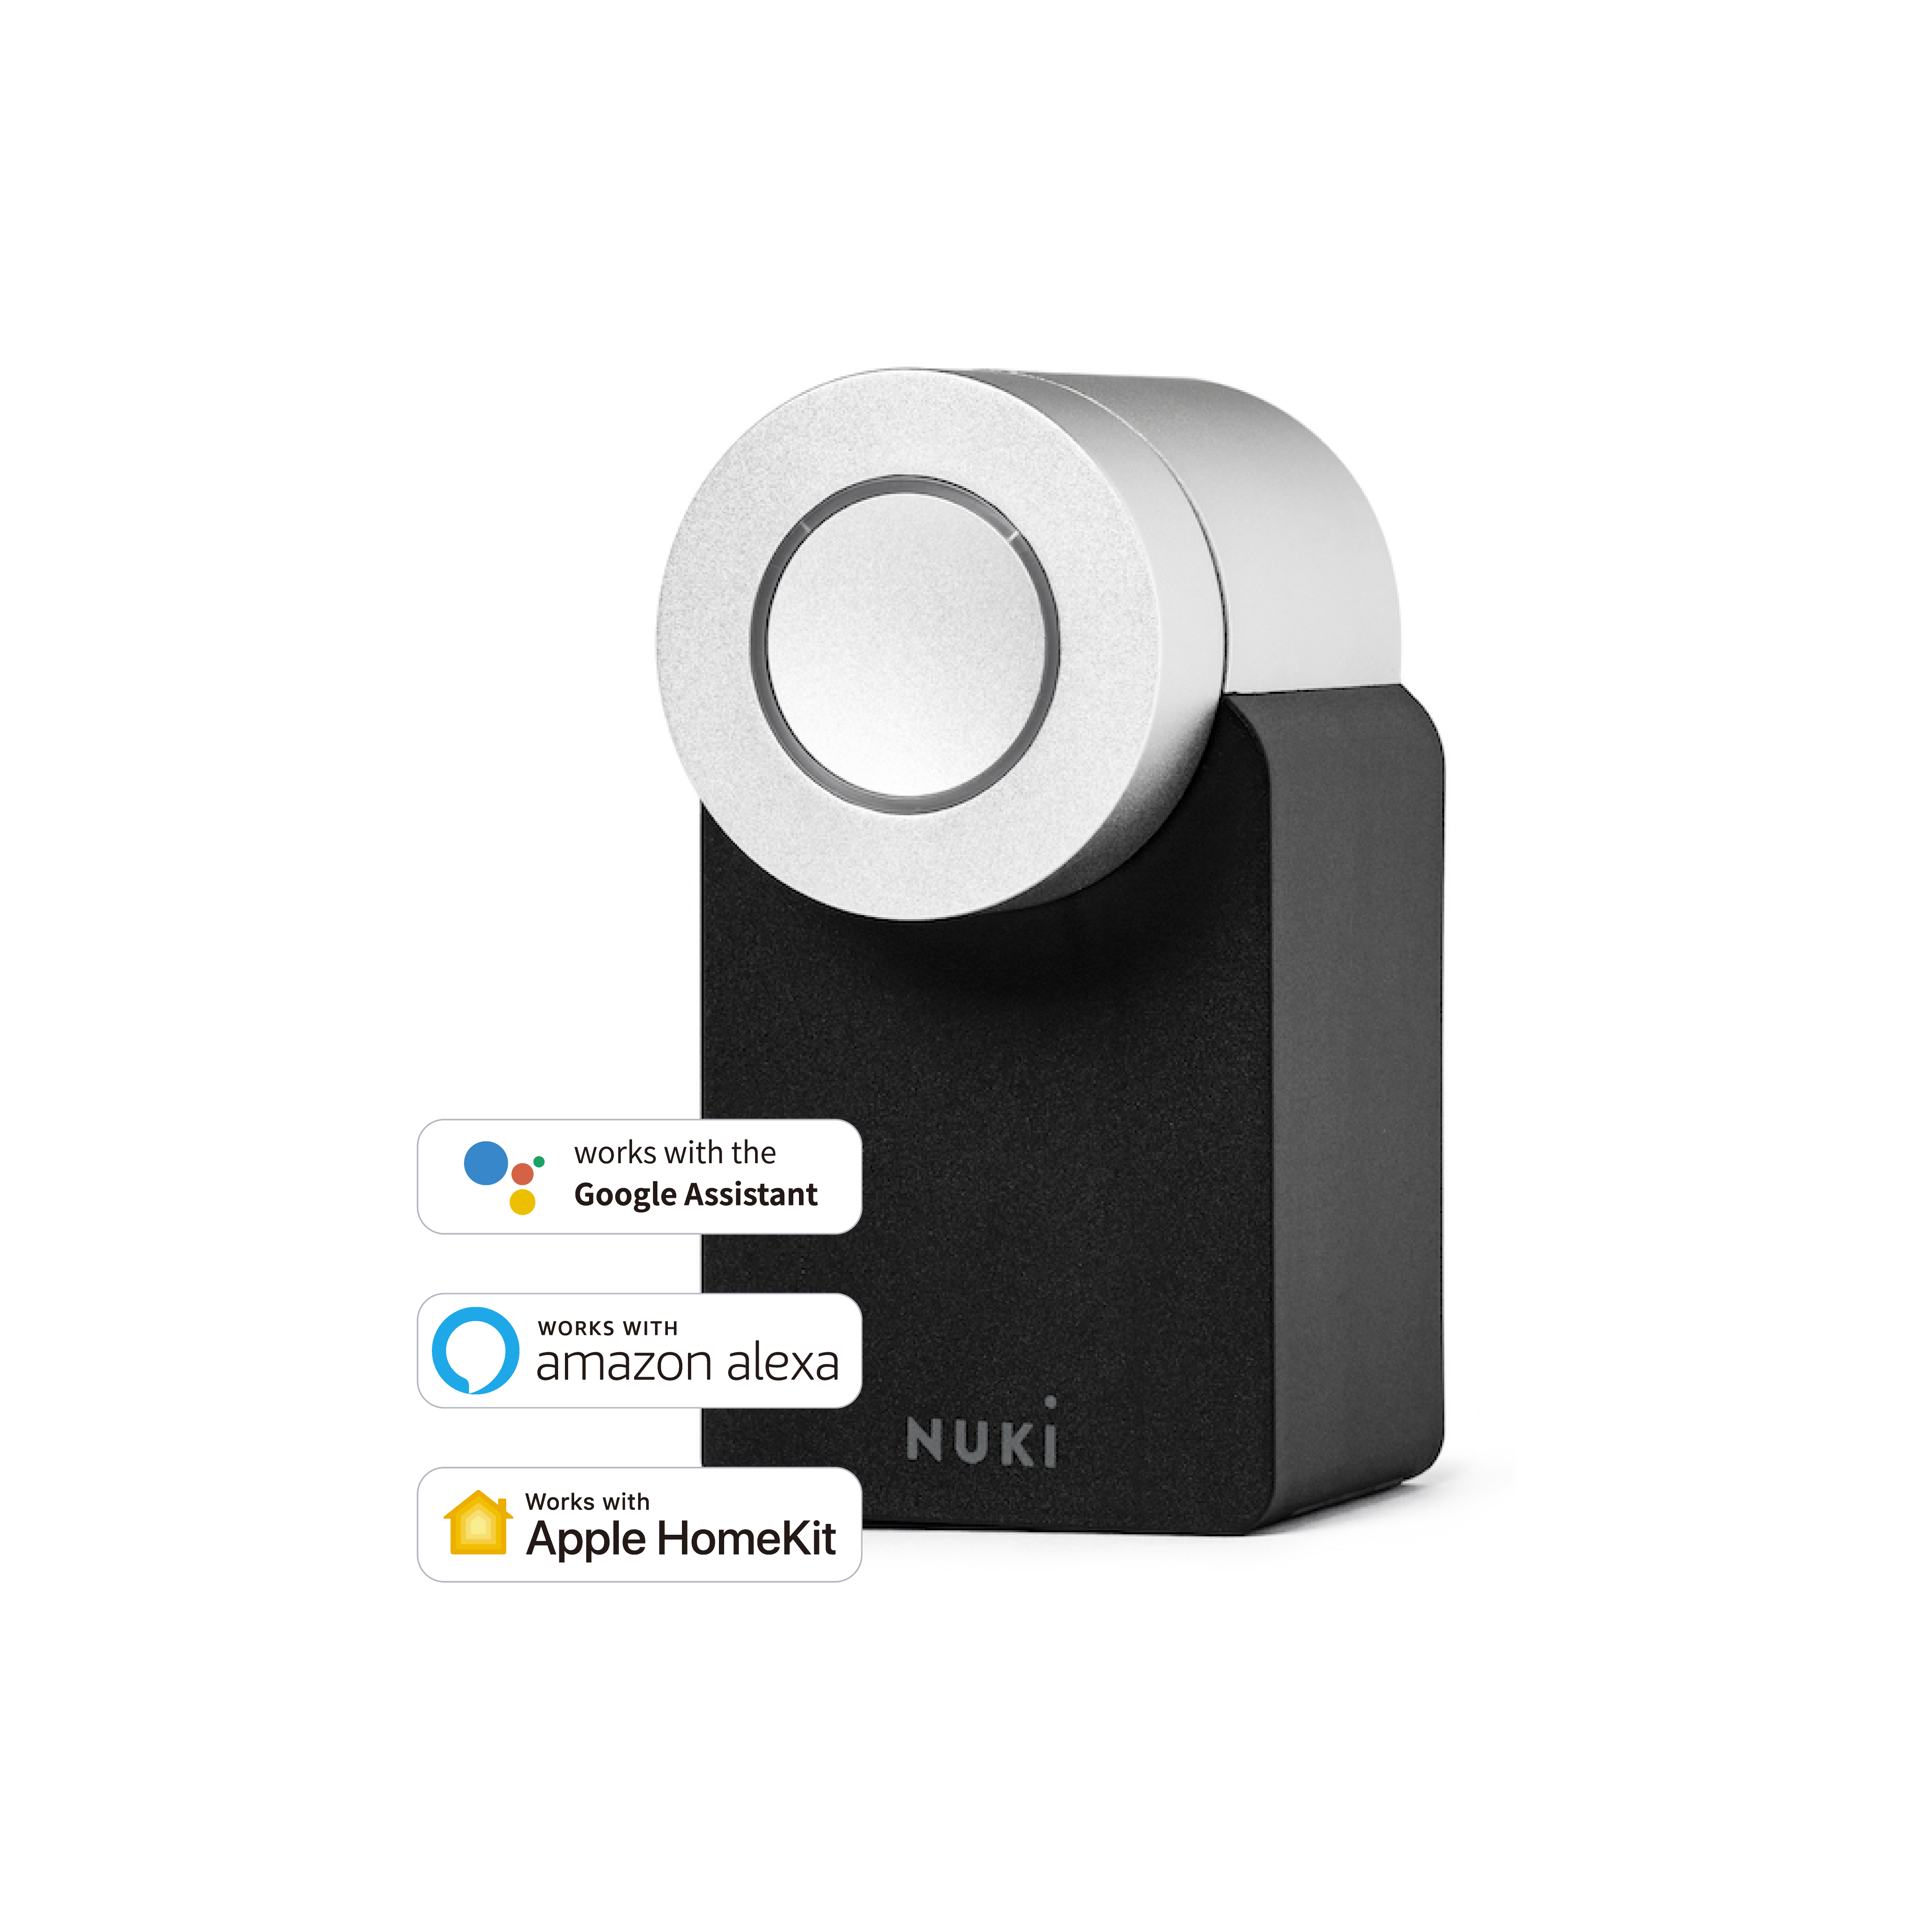 Nuki presenta la cerradura inteligente Nuki Smart Lock 2.0